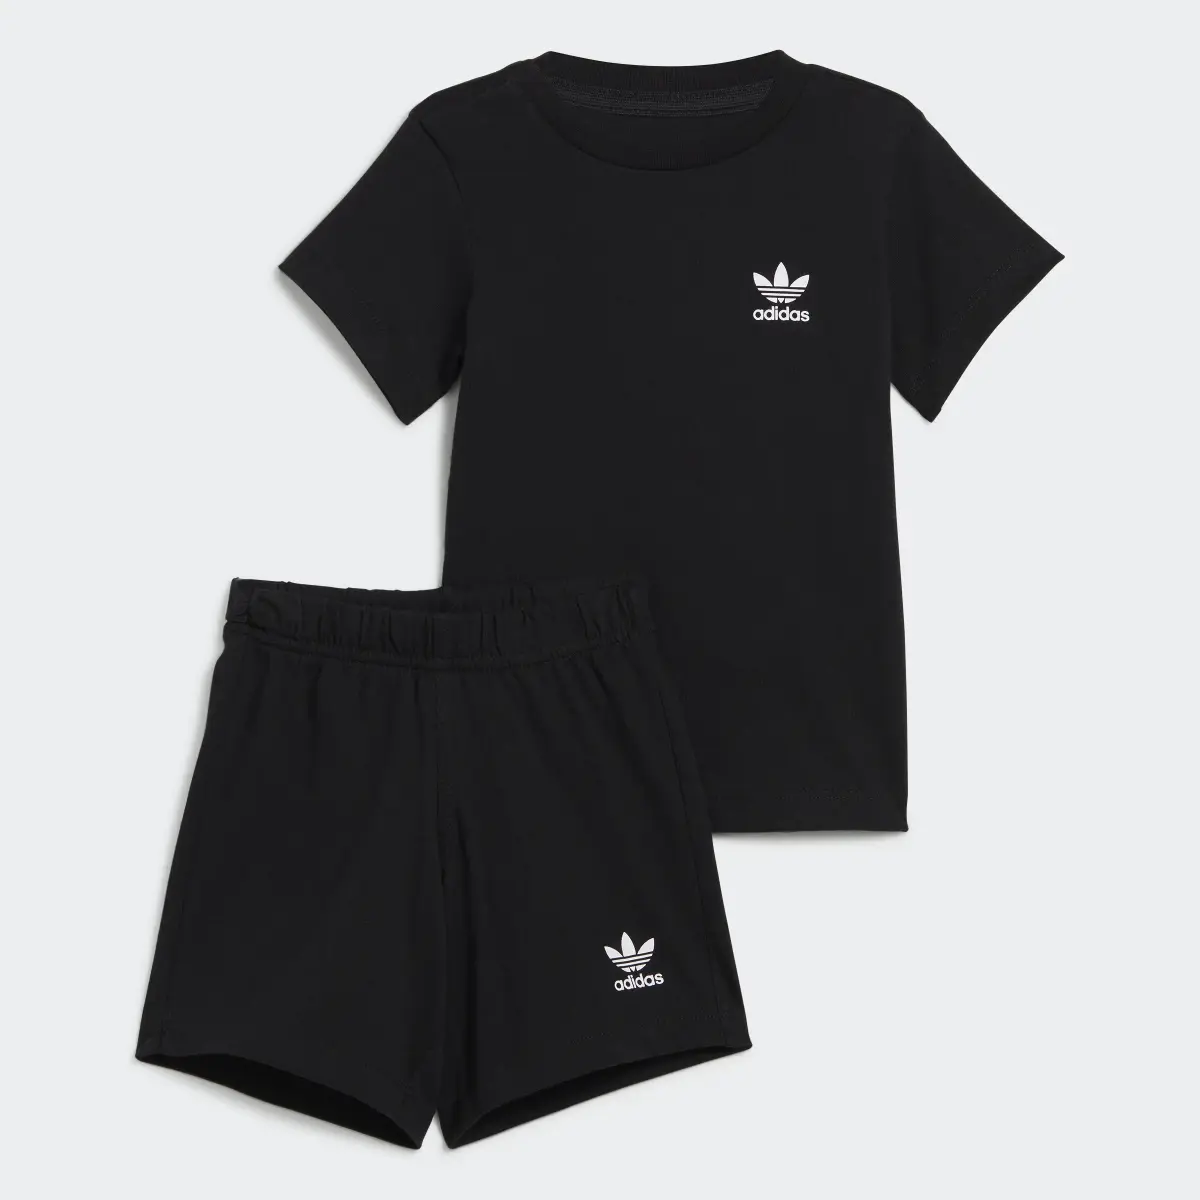 Adidas Shorts and Tee Set. 1